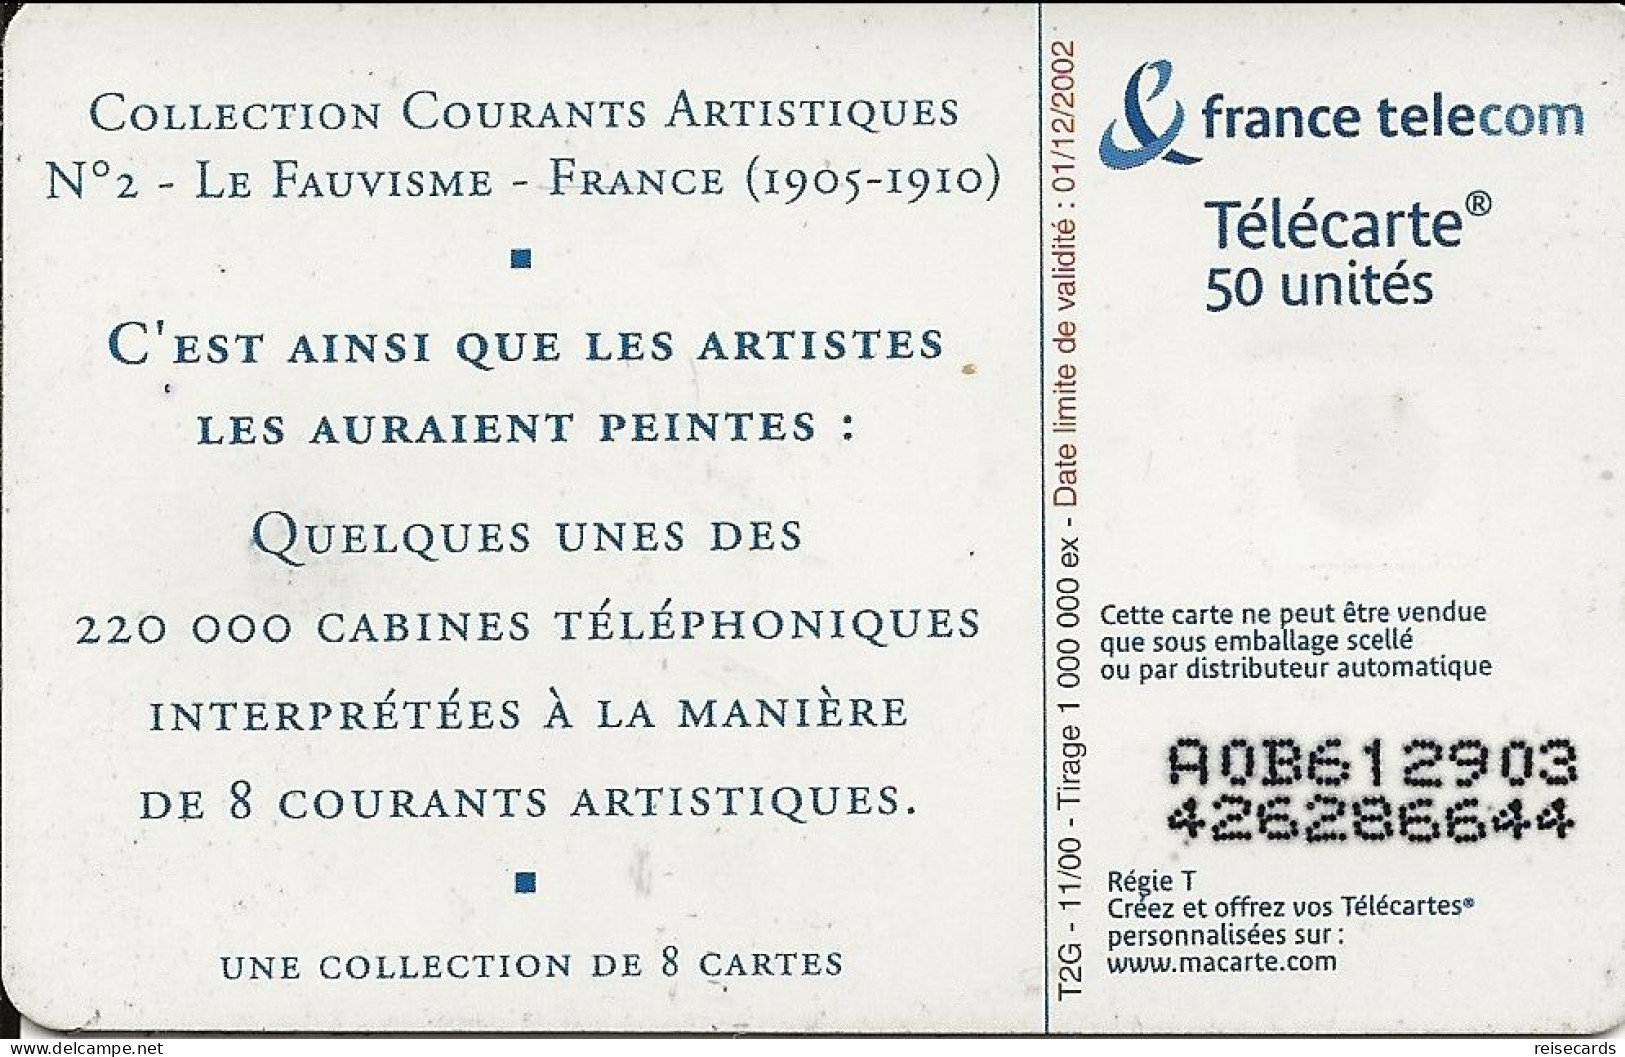 France: France Telecom 11/00 F1101 Collection Courants Artistiques - Le Fauvisme - 2000